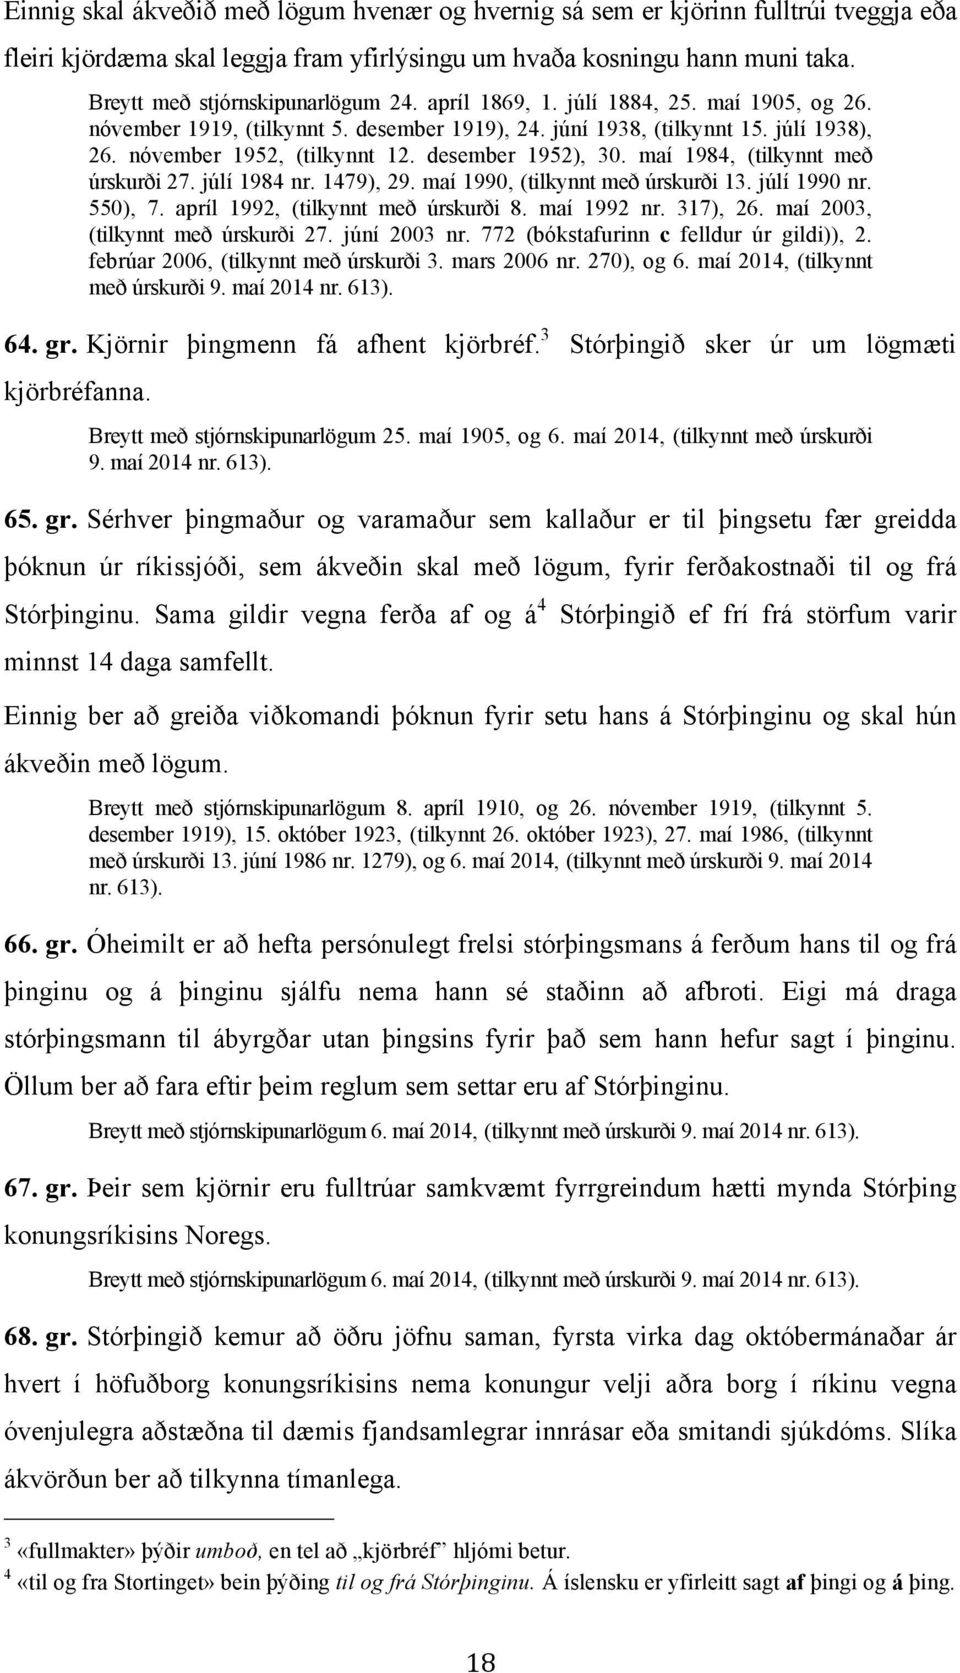 maí 1984, (tilkynnt með úrskurði 27. júlí 1984 nr. 1479), 29. maí 1990, (tilkynnt með úrskurði 13. júlí 1990 nr. 550), 7. apríl 1992, (tilkynnt með úrskurði 8. maí 1992 nr. 317), 26.